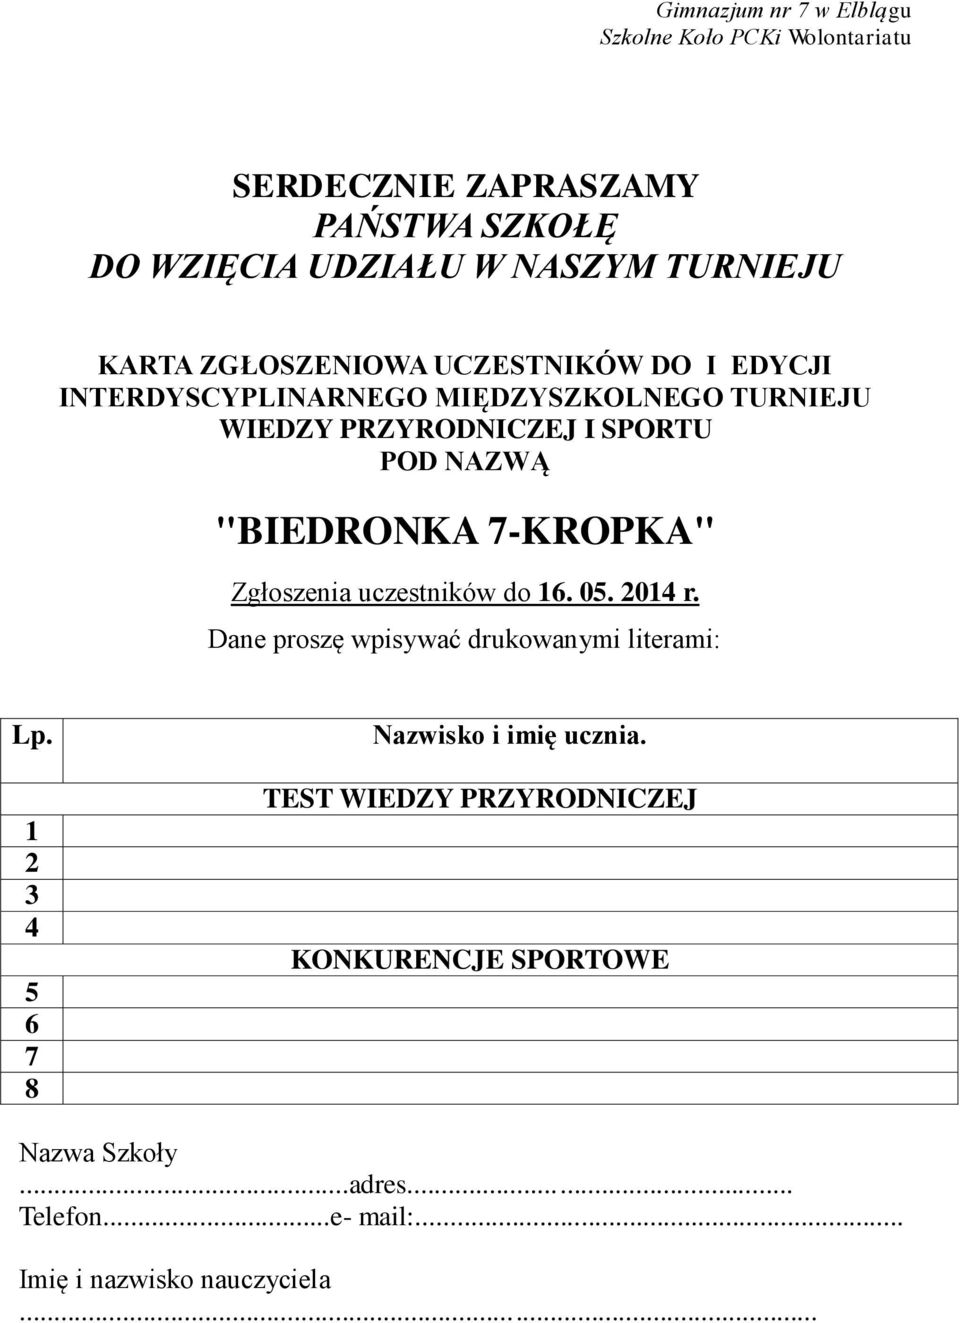 "BIEDRONKA 7-KROPKA" Zgłoszenia uczestników do 16. 05. 2014 r. Dane proszę wpisywać drukowanymi literami: Lp.